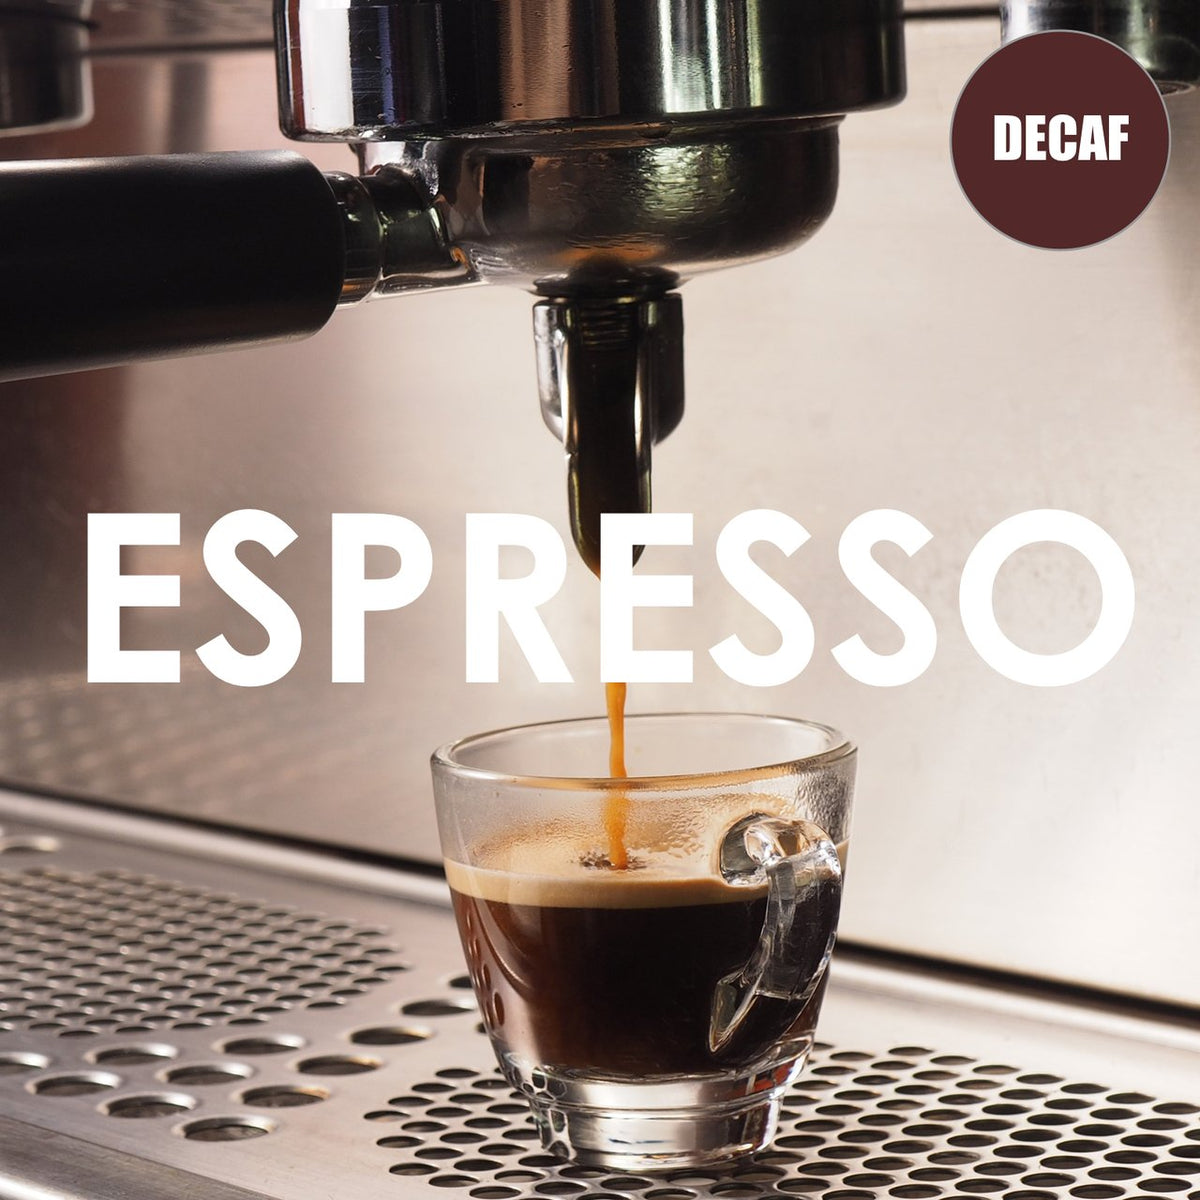 Espresso Decaf coffees